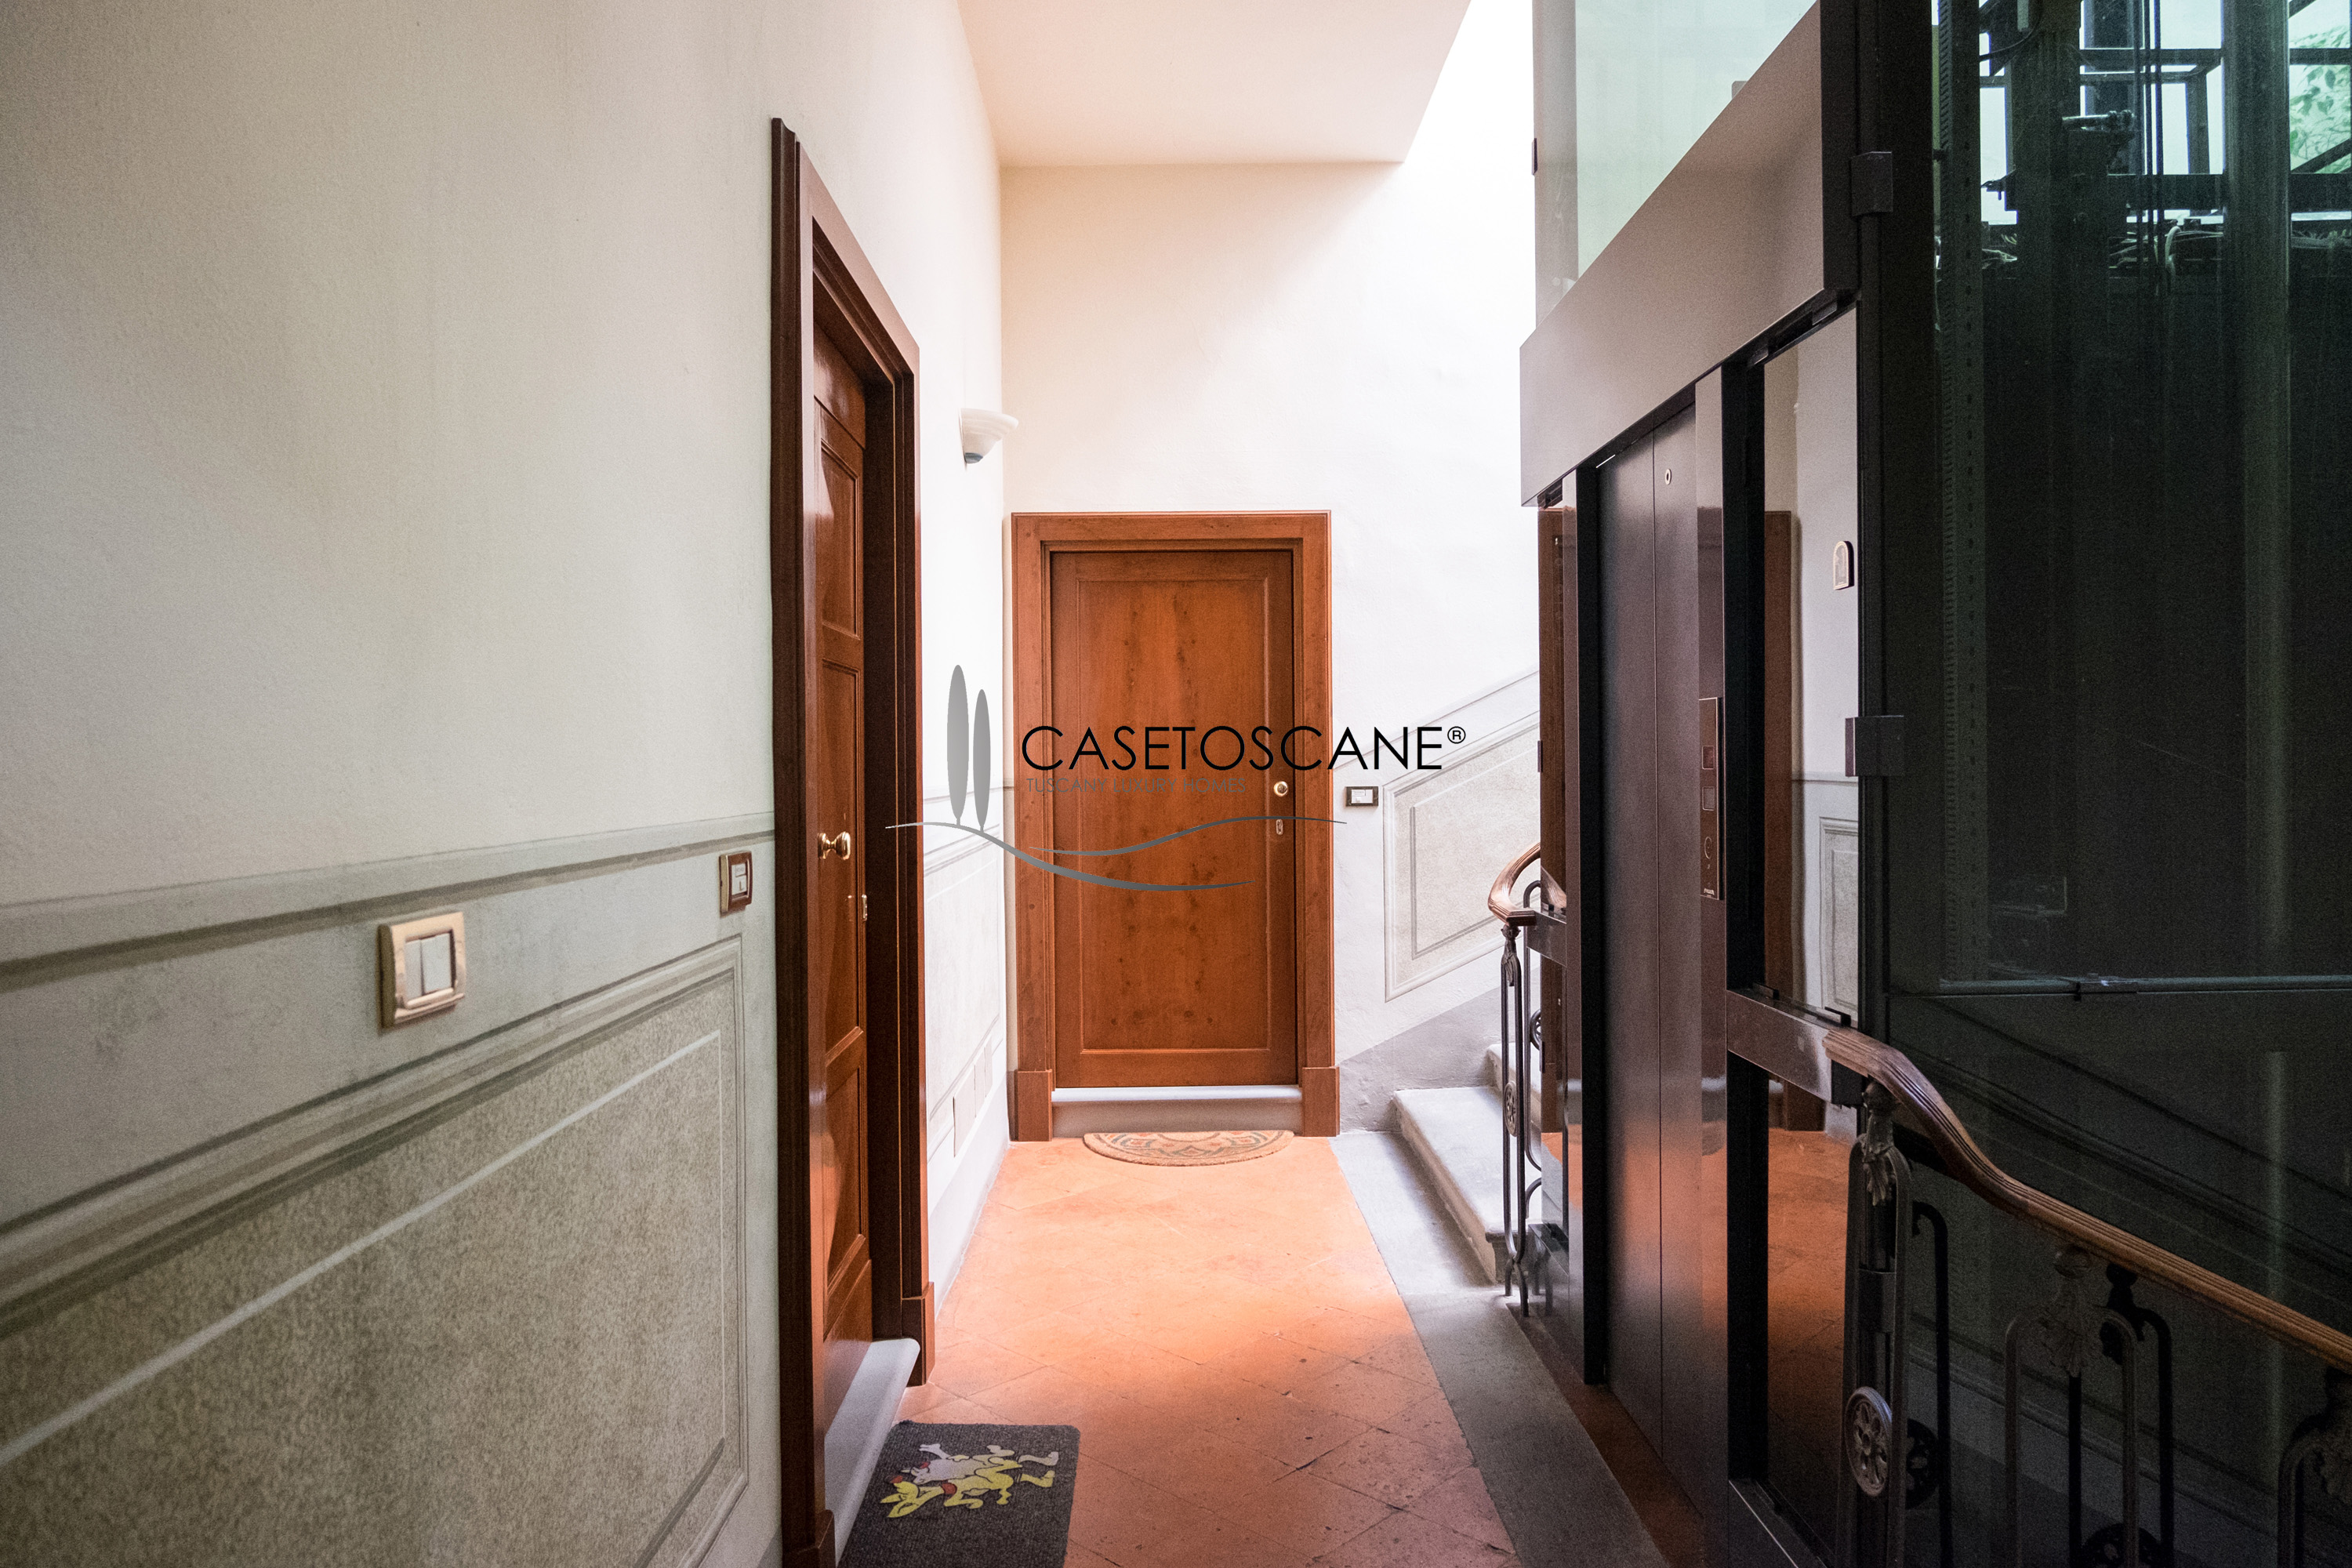 3088 - Bellissimo appartamento nel centro storico di Lucignano (AR), superficie mq.80, soffitti affrescati, 2°P con ascensore.